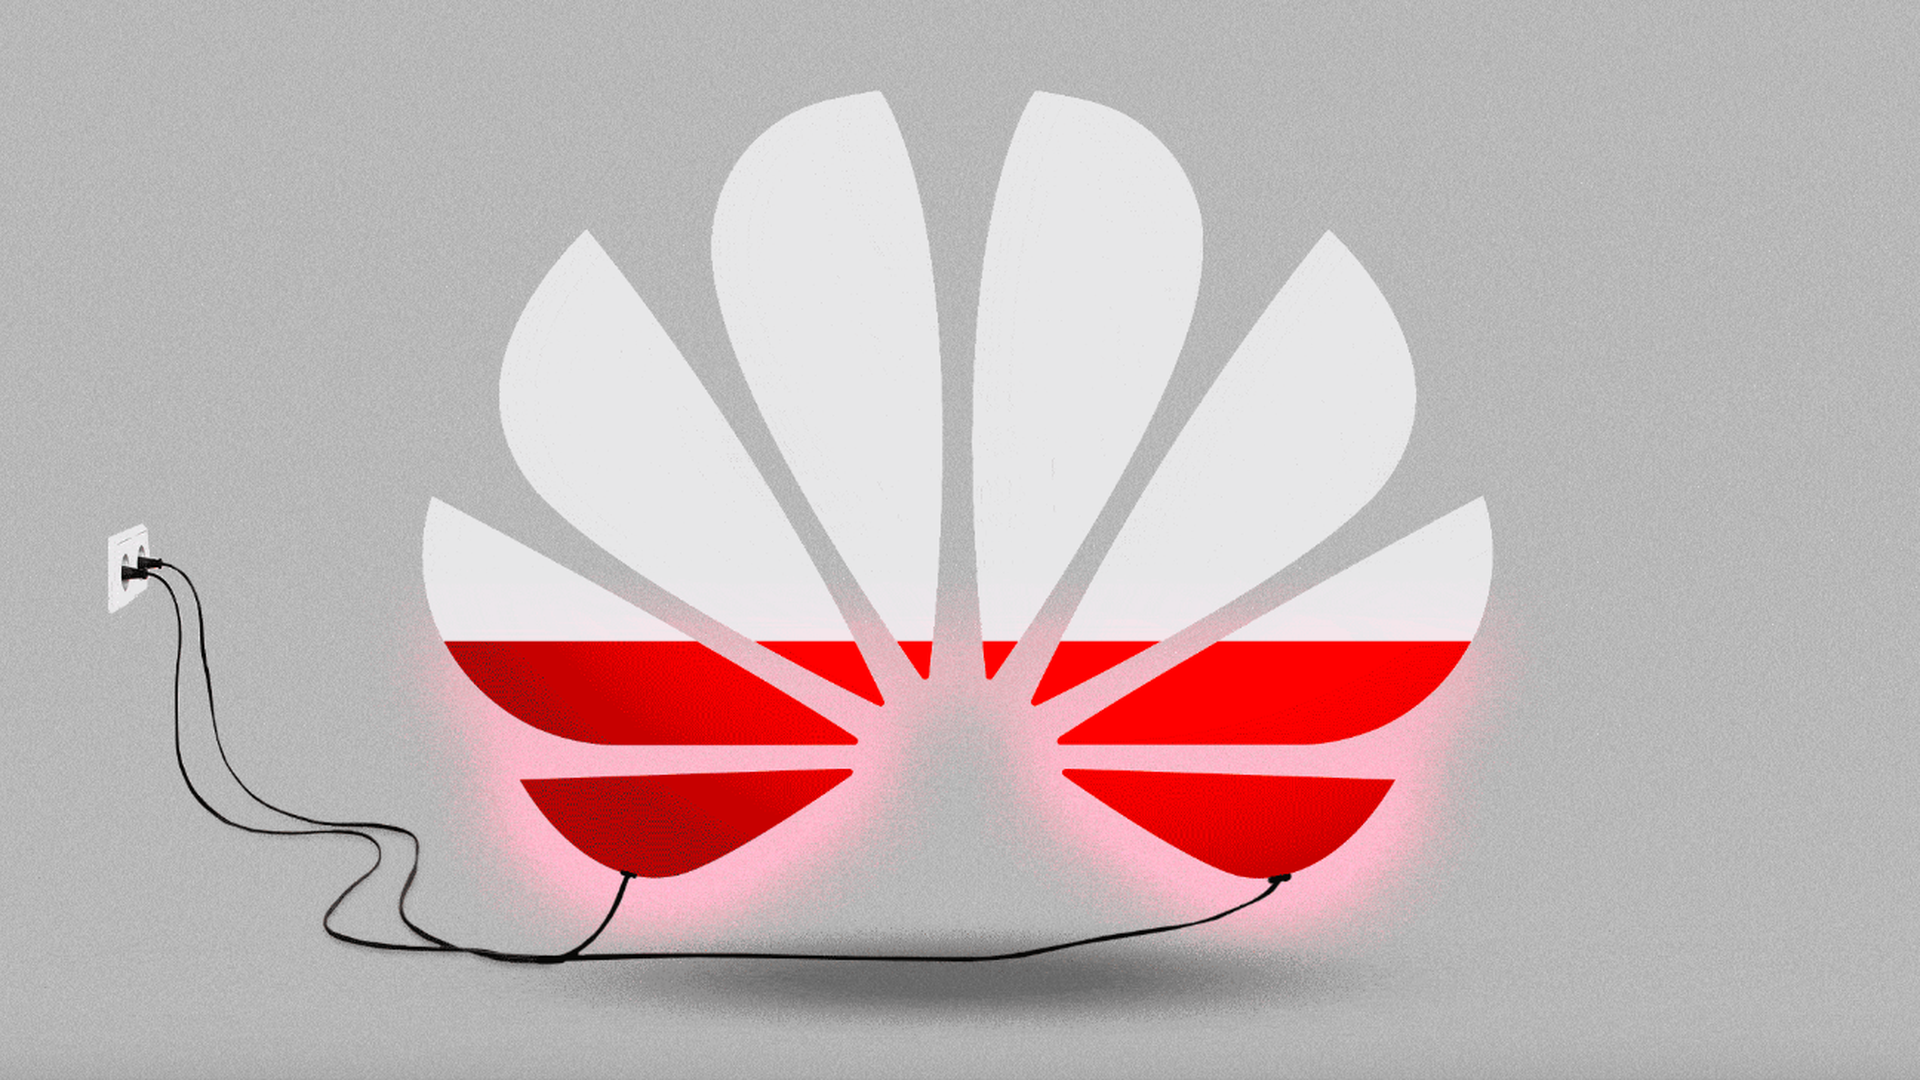 Huawei logo as a battery